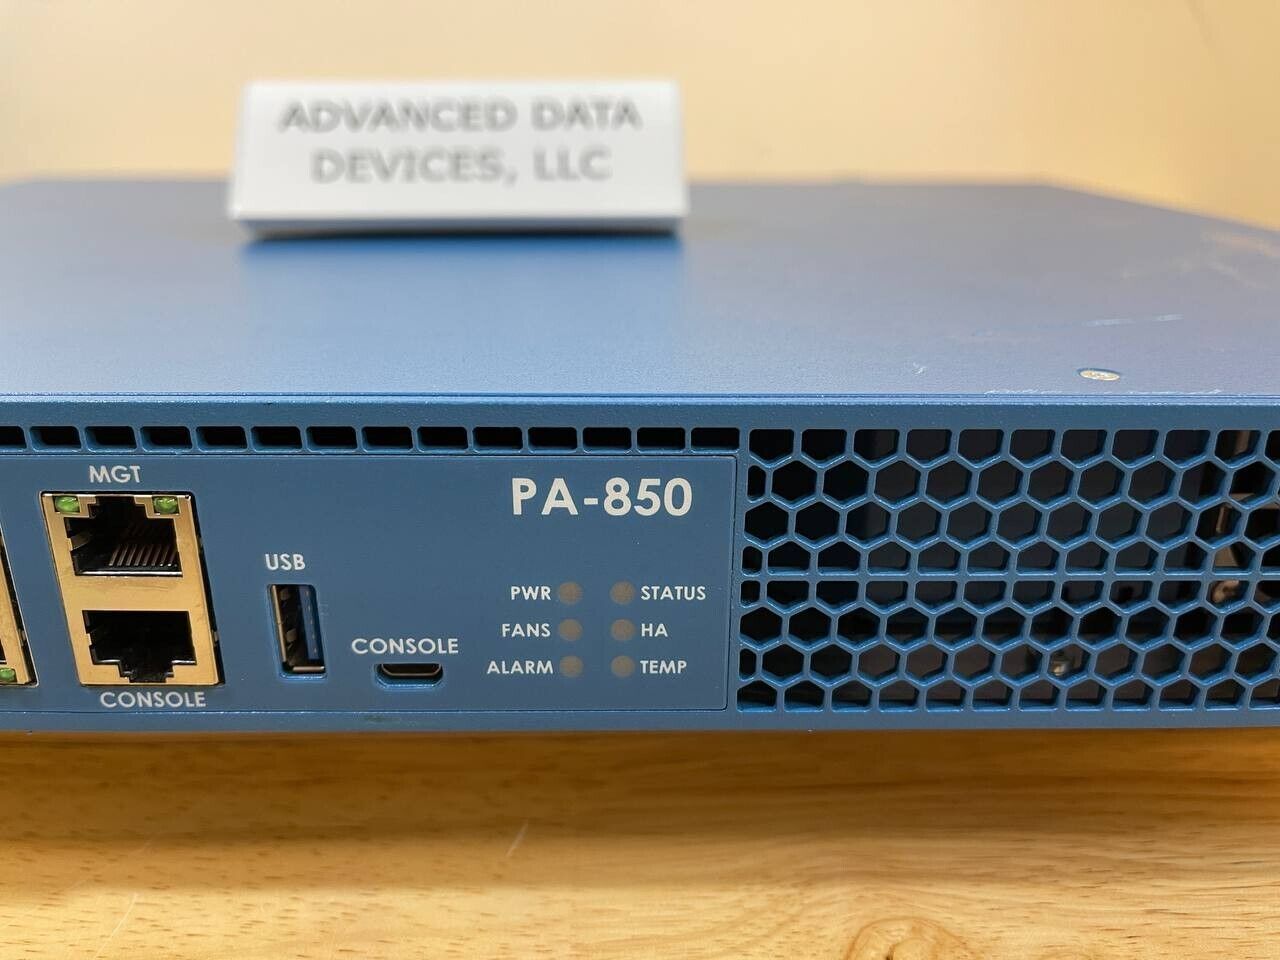 Palo Alto PA-850 Next-Generation Firewall VPN Gateway 8x SFP V10.0.8-h4 2x PSU 750-000119-00E.